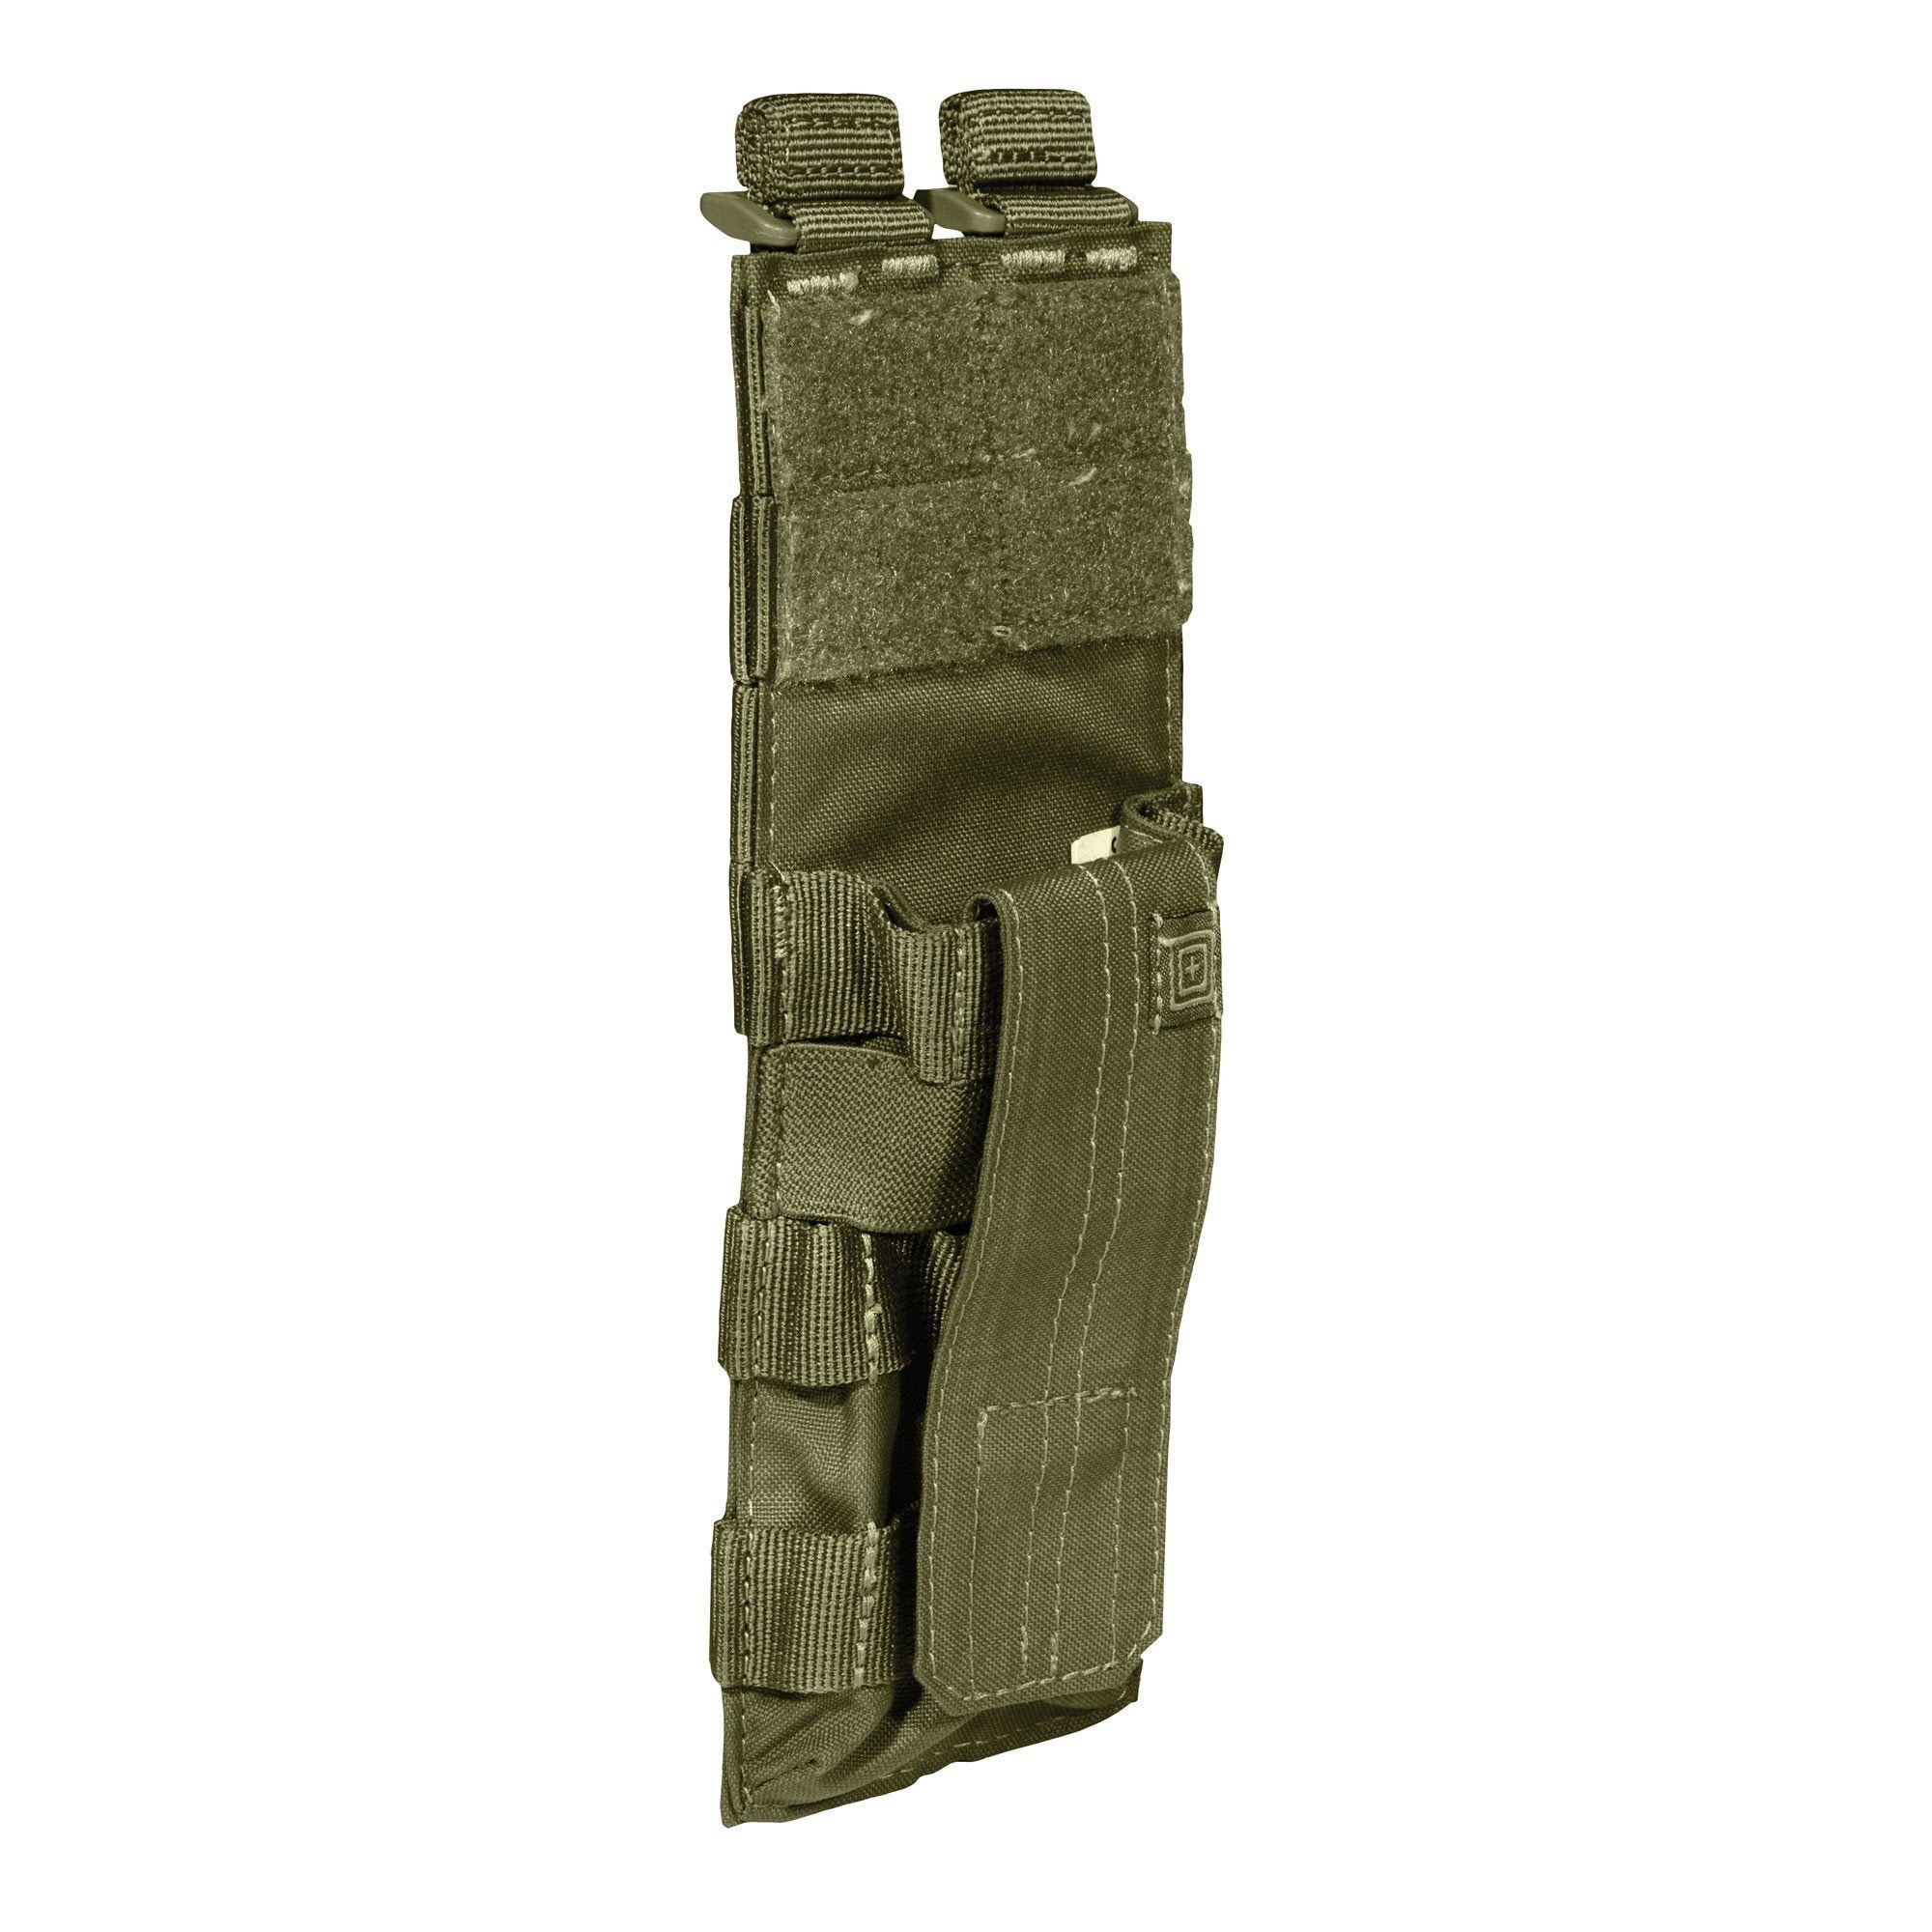 5.11 Tactical Rigid Cuff Case Accessories 5.11 Tactical TAC OD Tactical Gear Supplier Tactical Distributors Australia